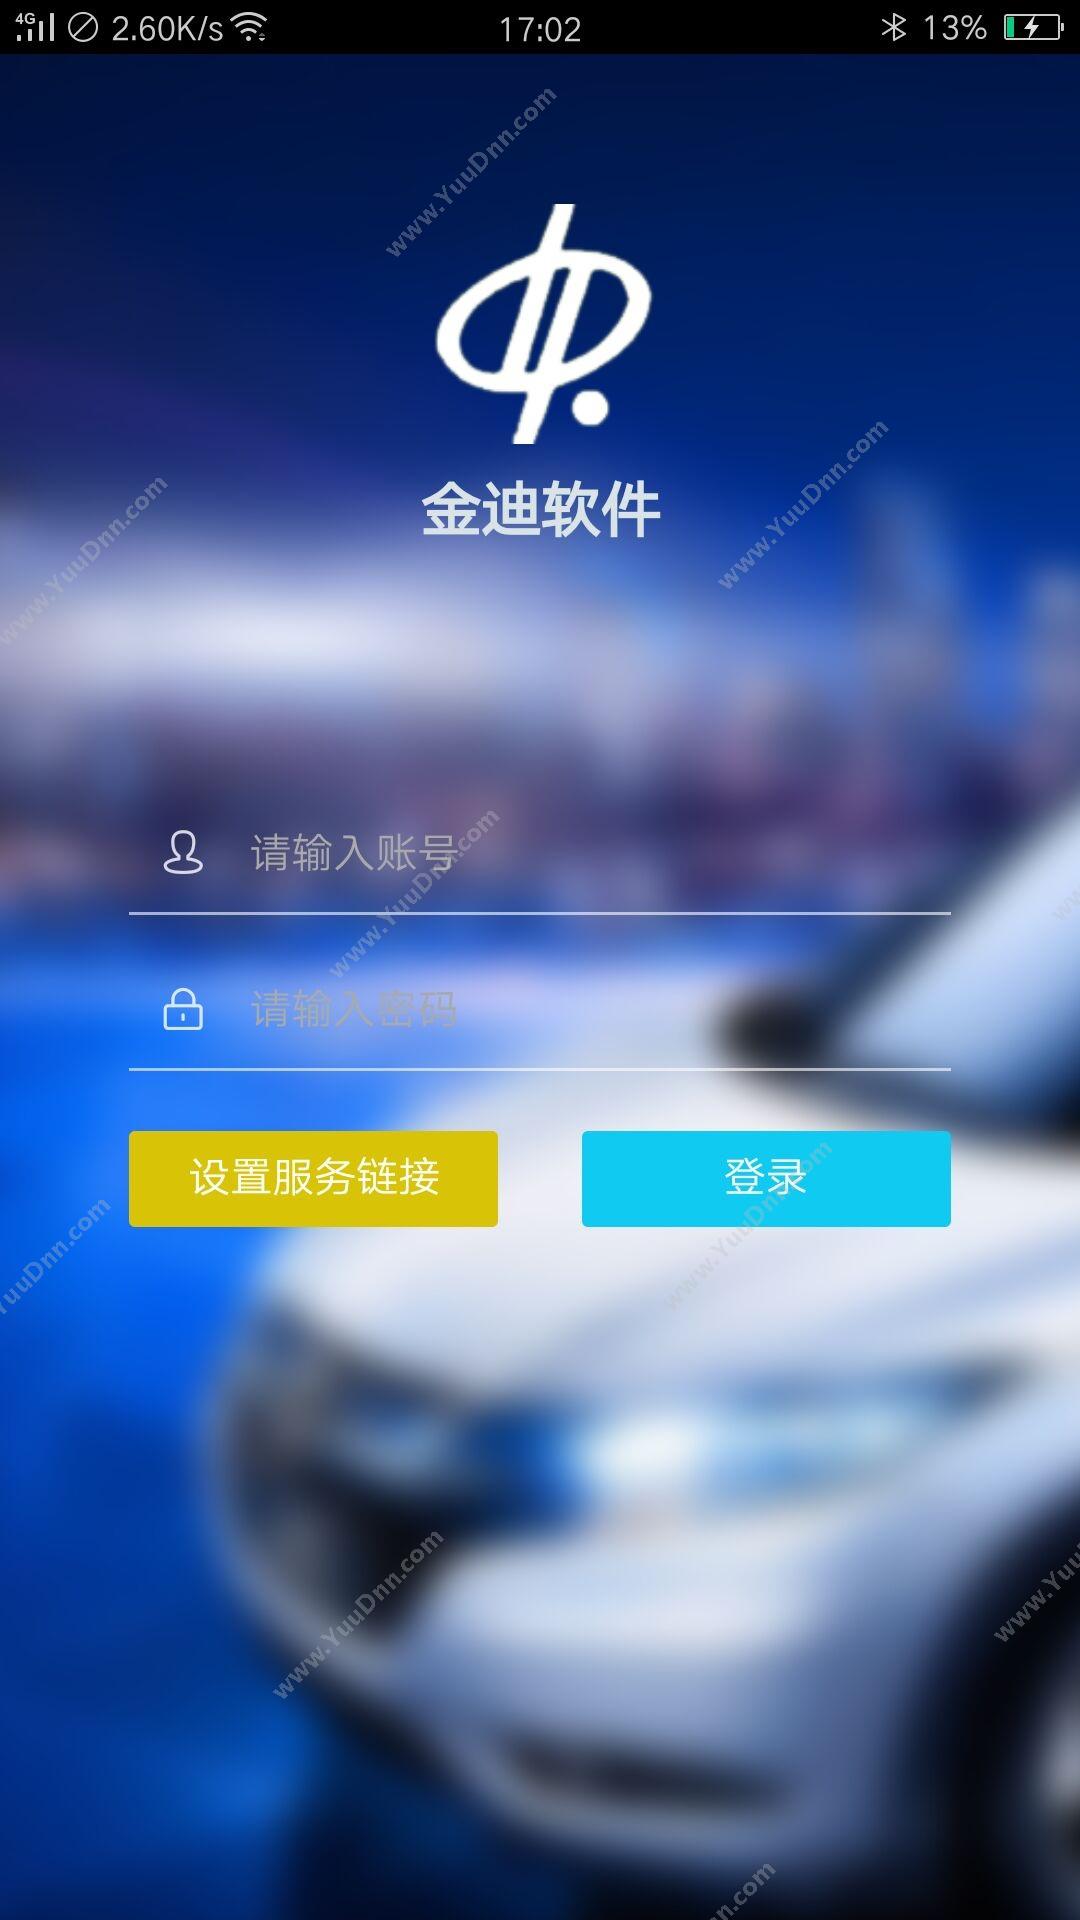 深圳市迪软技术 金迪4S售后业务管理系统VER12.5 售后管理